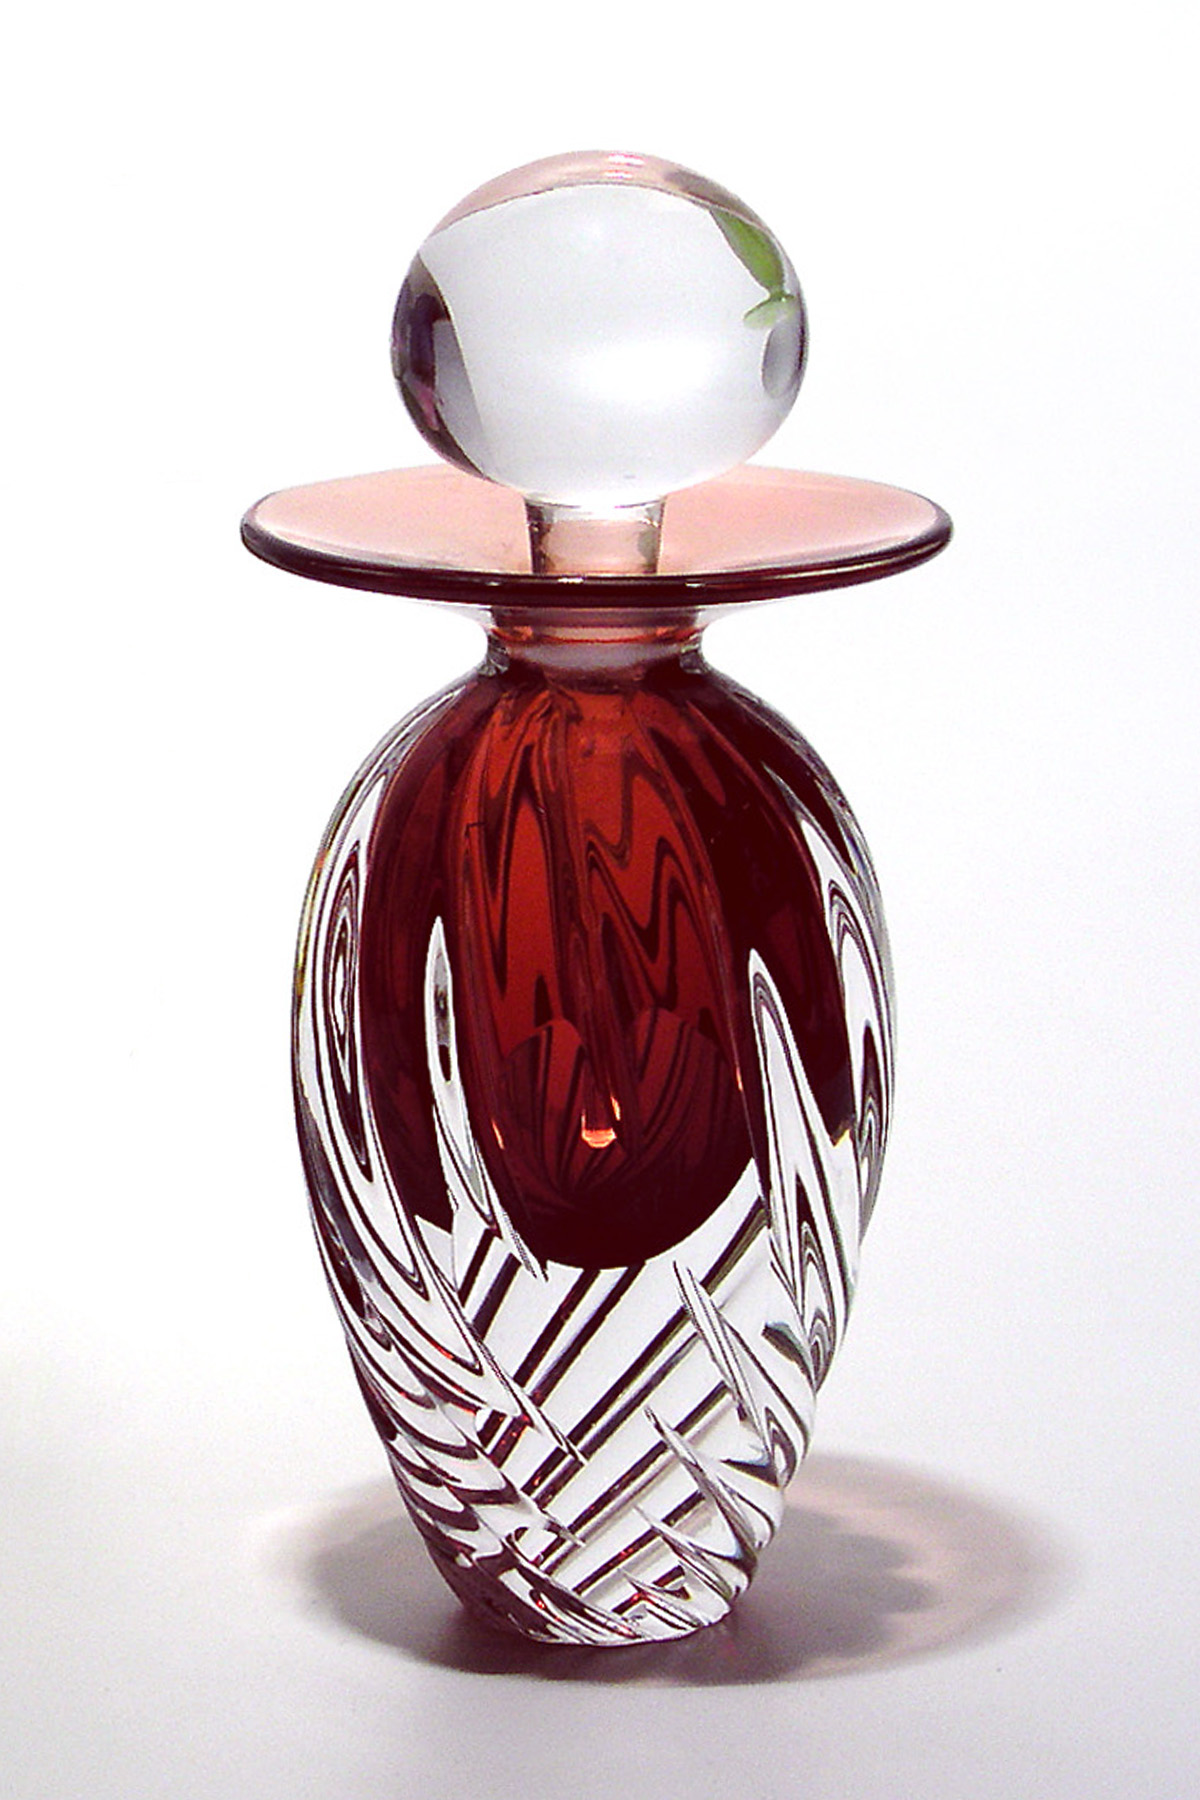 Vintage Perfume Bottles | 'Grace' by Michael Trimpol | Boha Glass